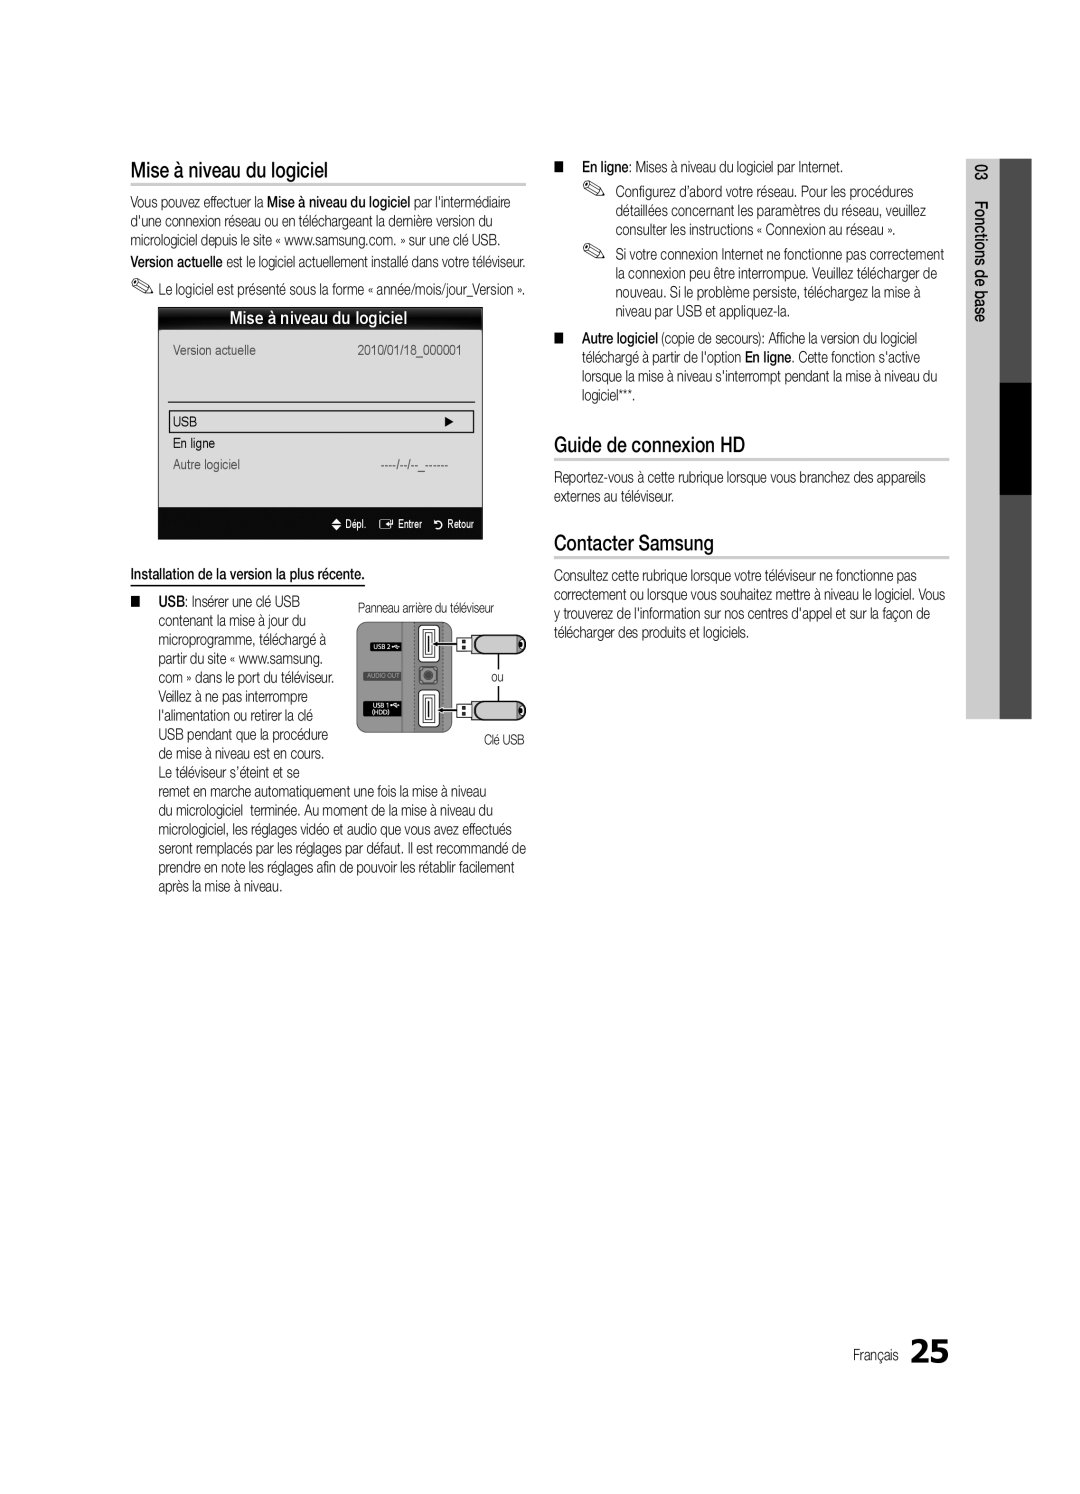 Samsung UC6500-ZC Mise à niveau du logiciel, Guide de connexion HD, Contacter Samsung, basede 03 Fonctions, En ligne 